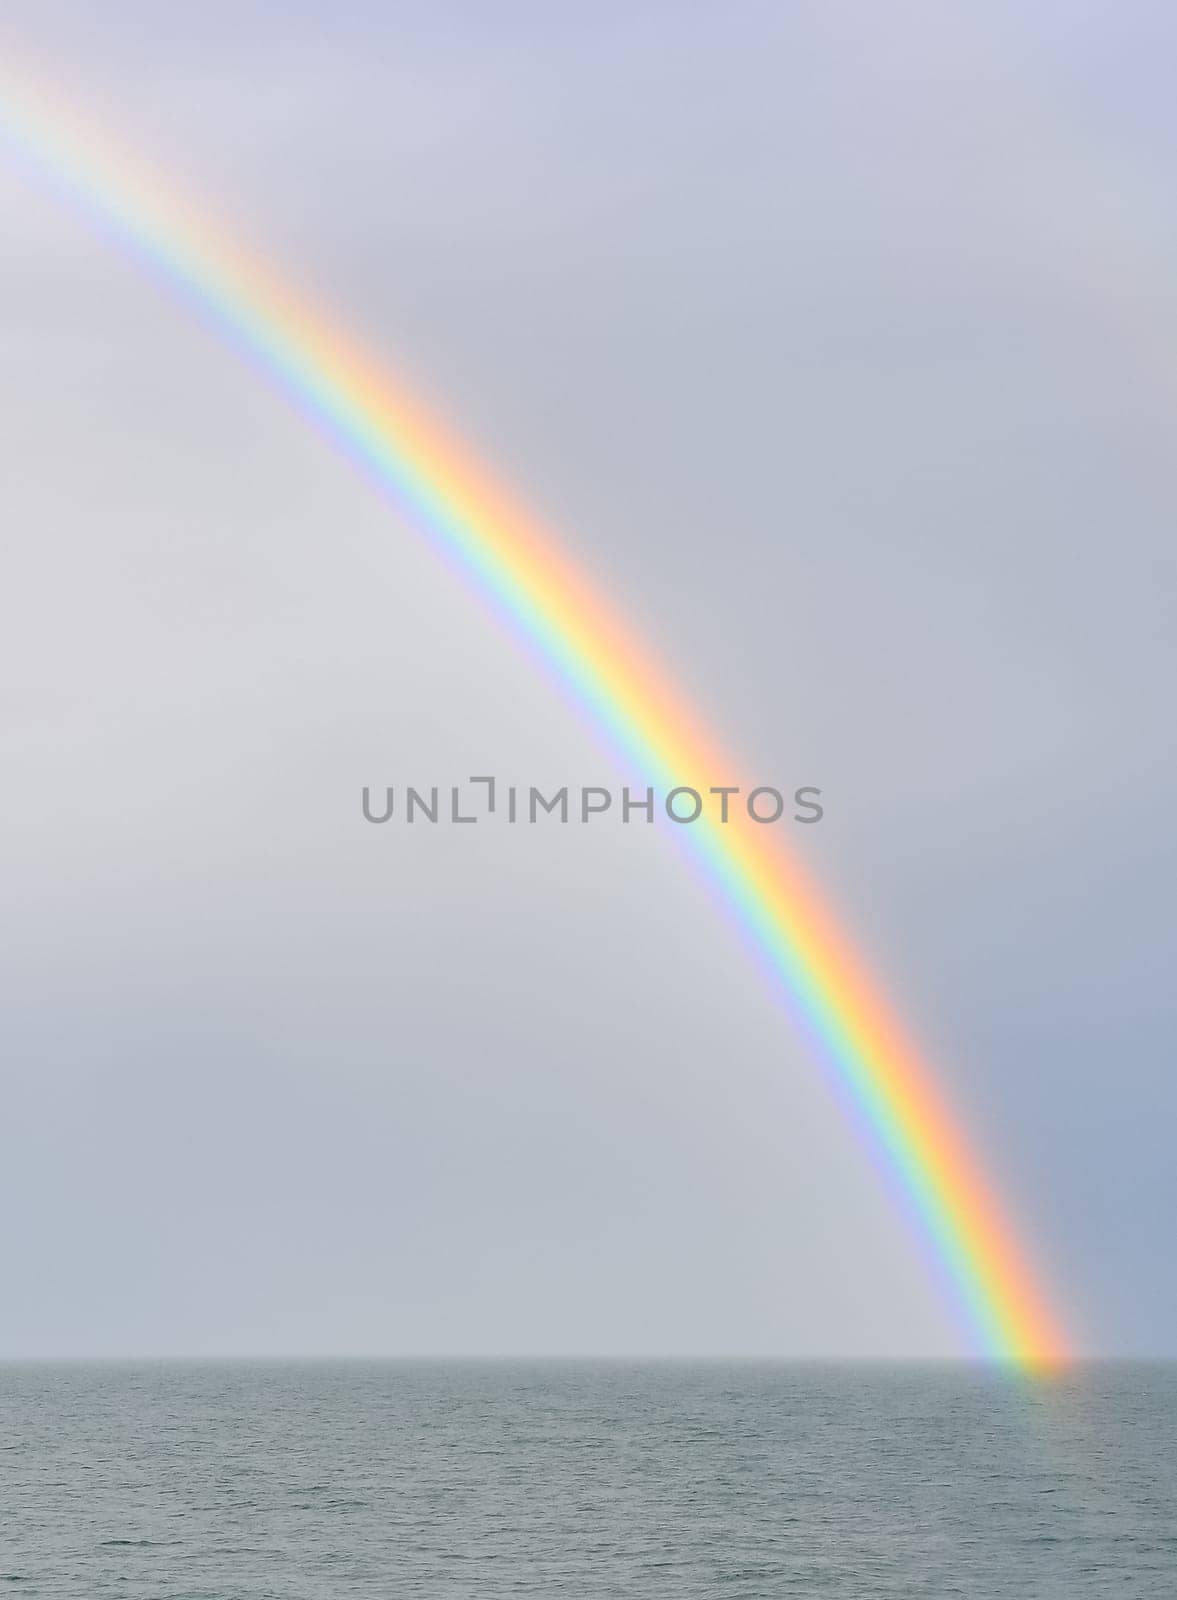 Multicolored rainbow over the sea, Black Sea